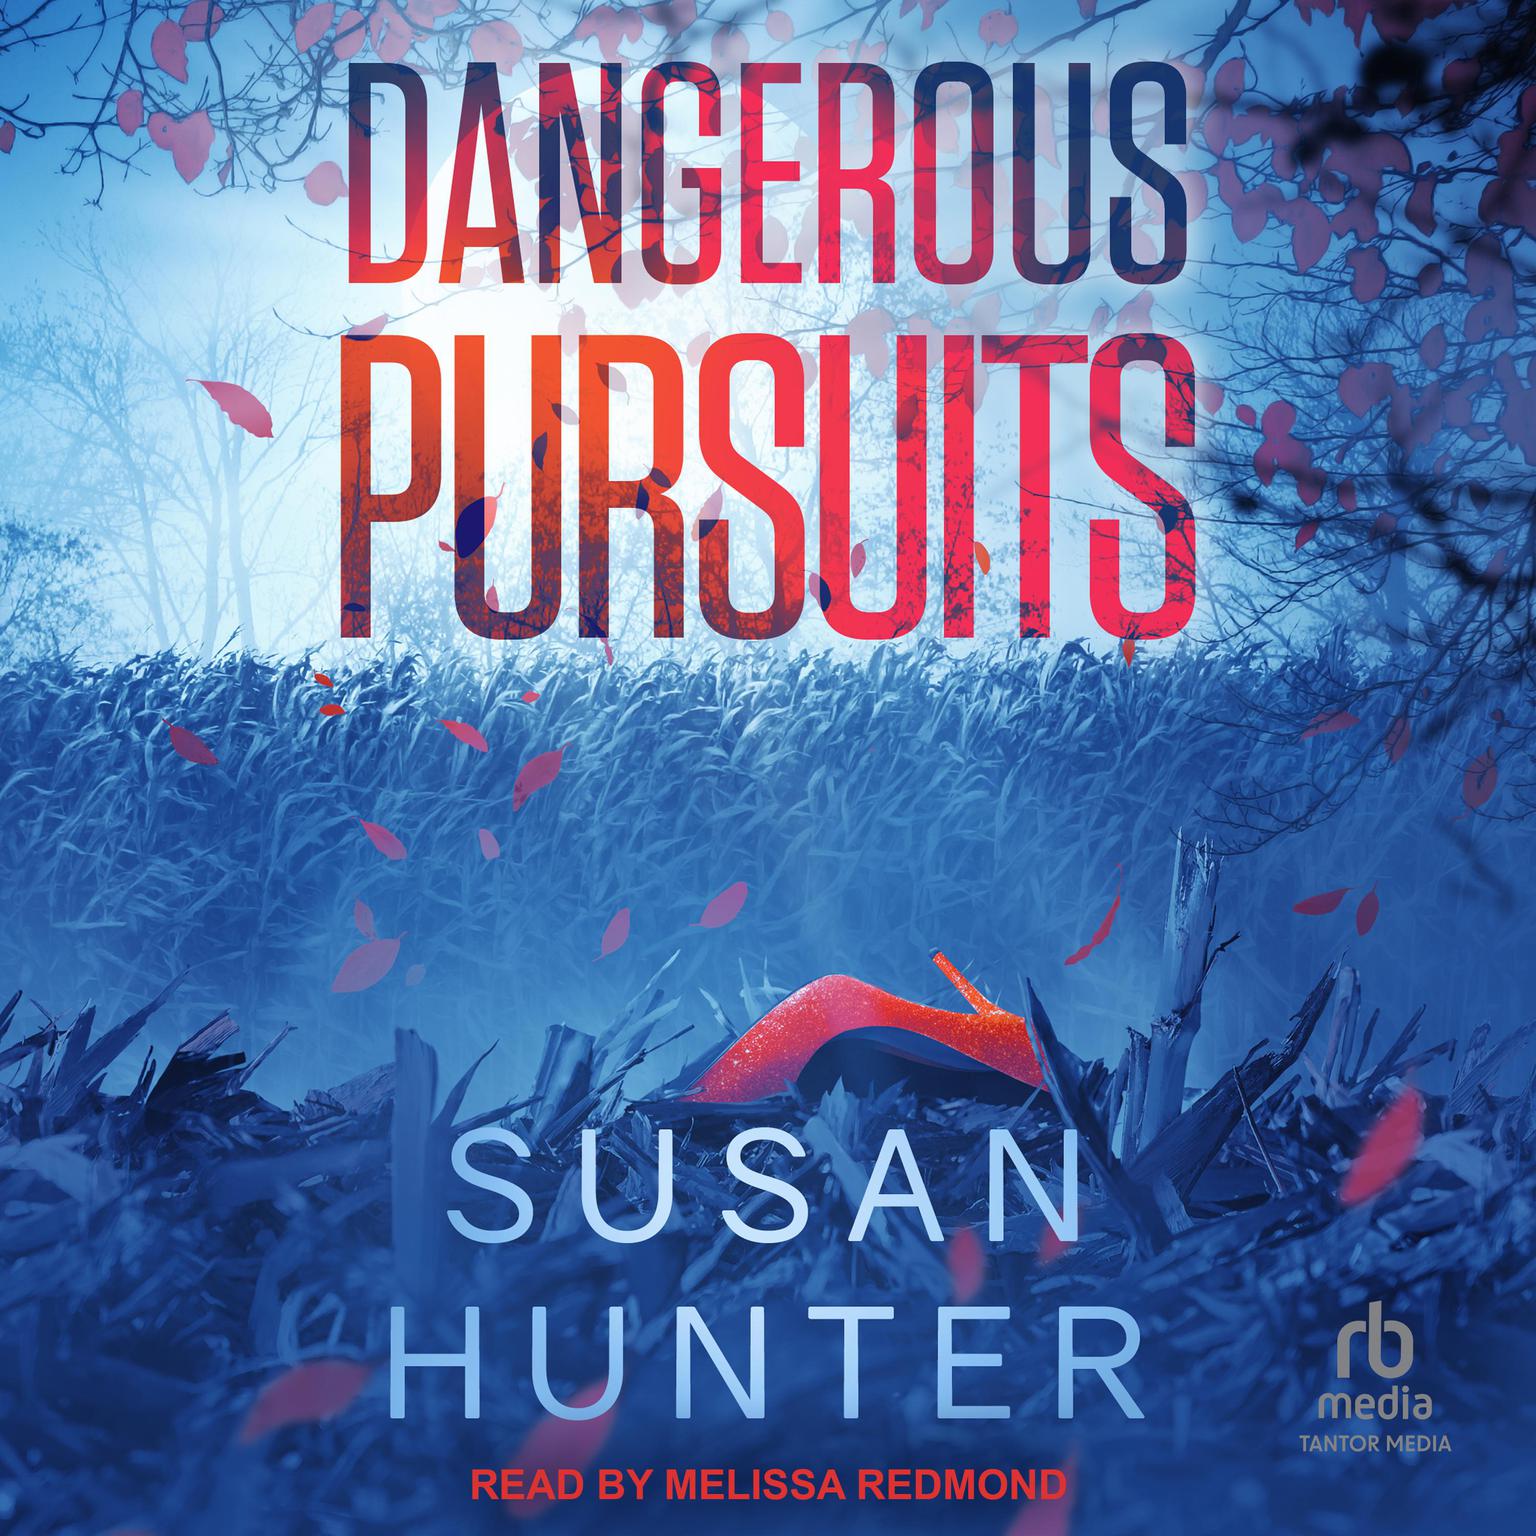 Dangerous Pursuits Audiobook, by Susan Hunter